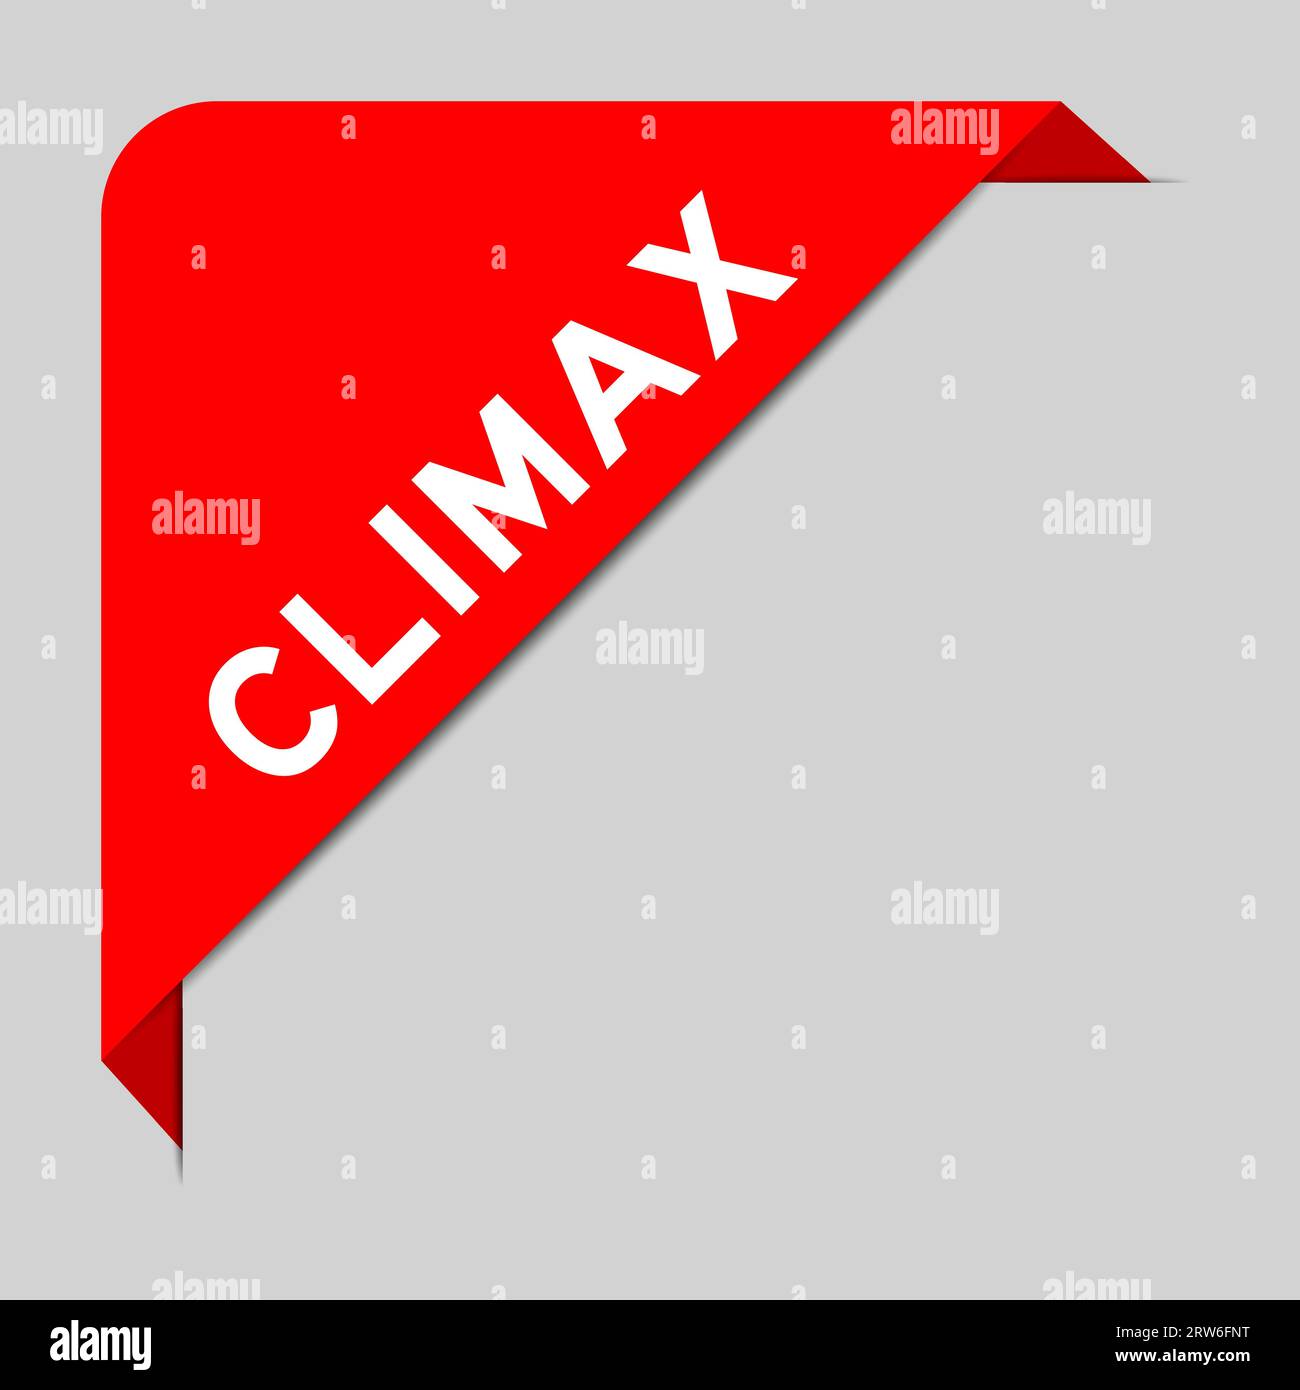 Rote Farbe des Banners für die Eckbeschriftung mit dem Wort Climax auf grauem Hintergrund Stock Vektor